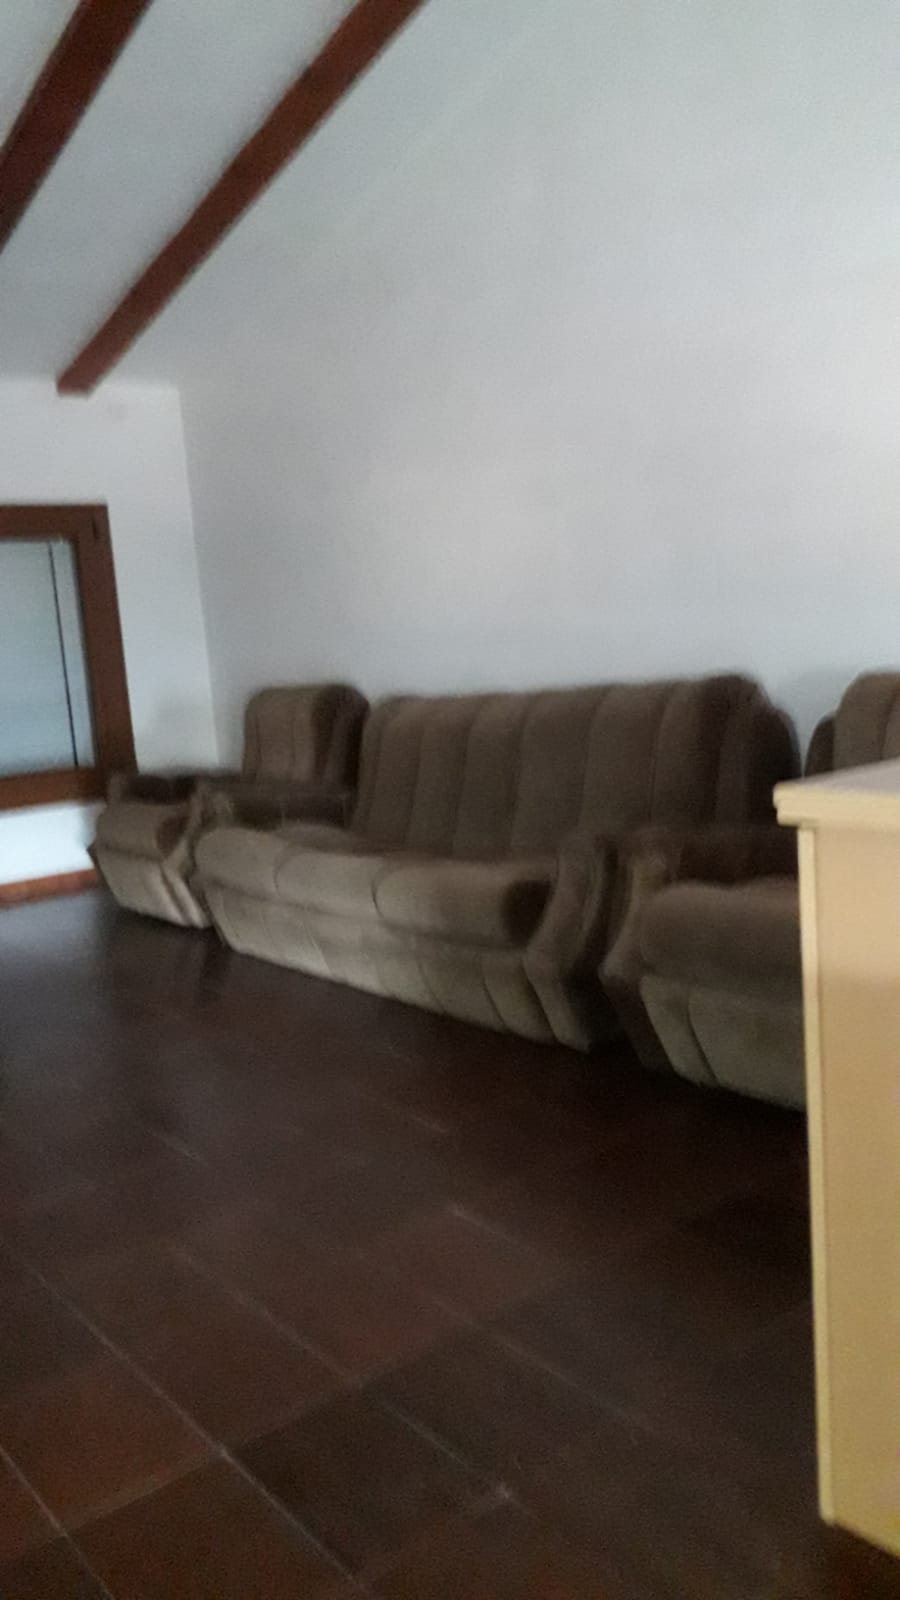 Vaciado de pisos en Arbolí | ¡Transforme su hogar en un espacio limpio y ordenado!